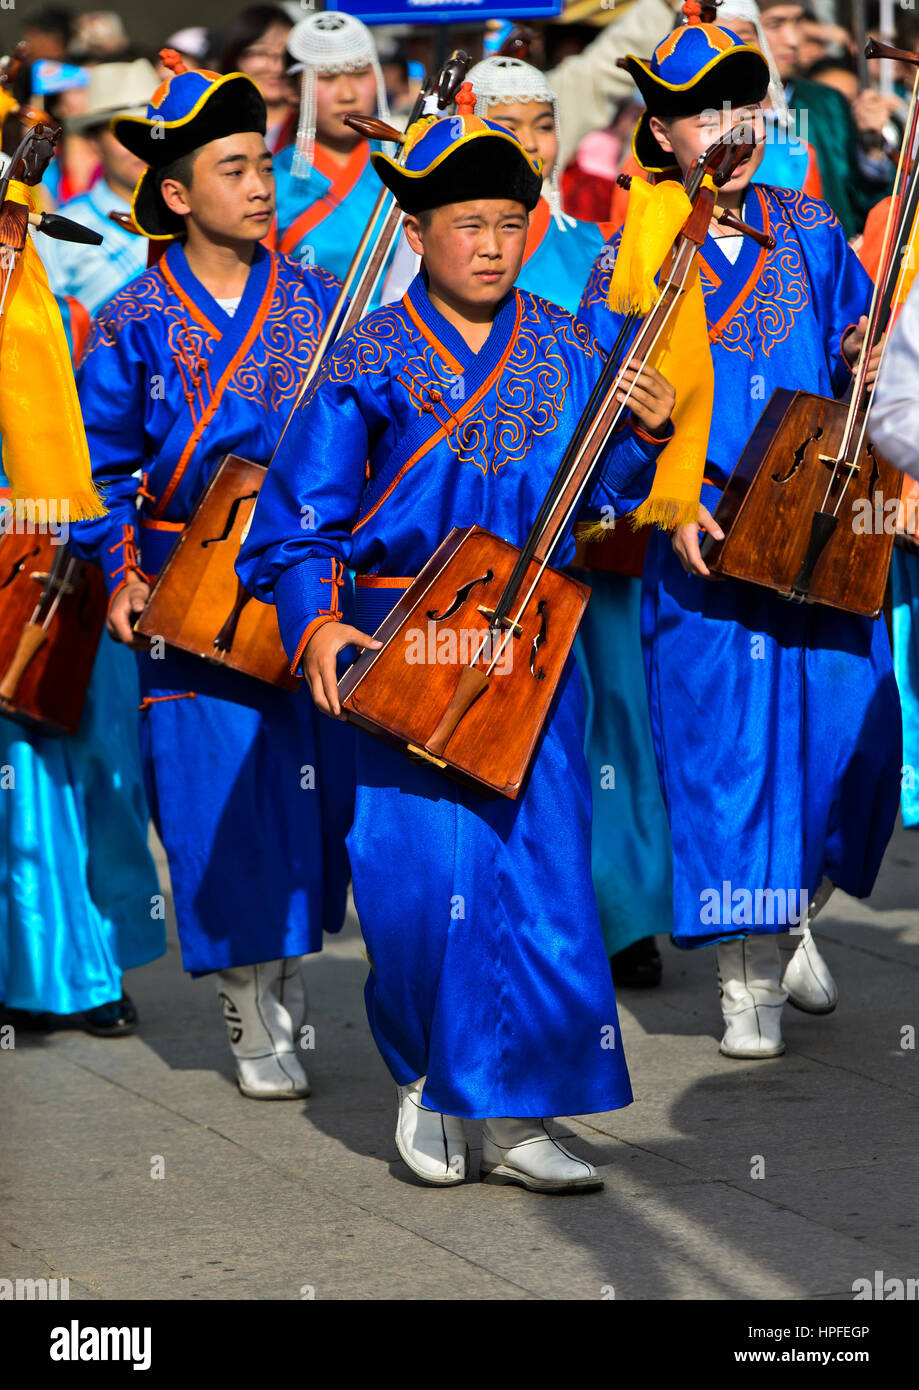 La juventud en Deel ropa tradicional y un violín con cabeza de caballo, Morin chuur, Festival del traje nacional de Mongolia, Ulaanbaatar Foto de stock